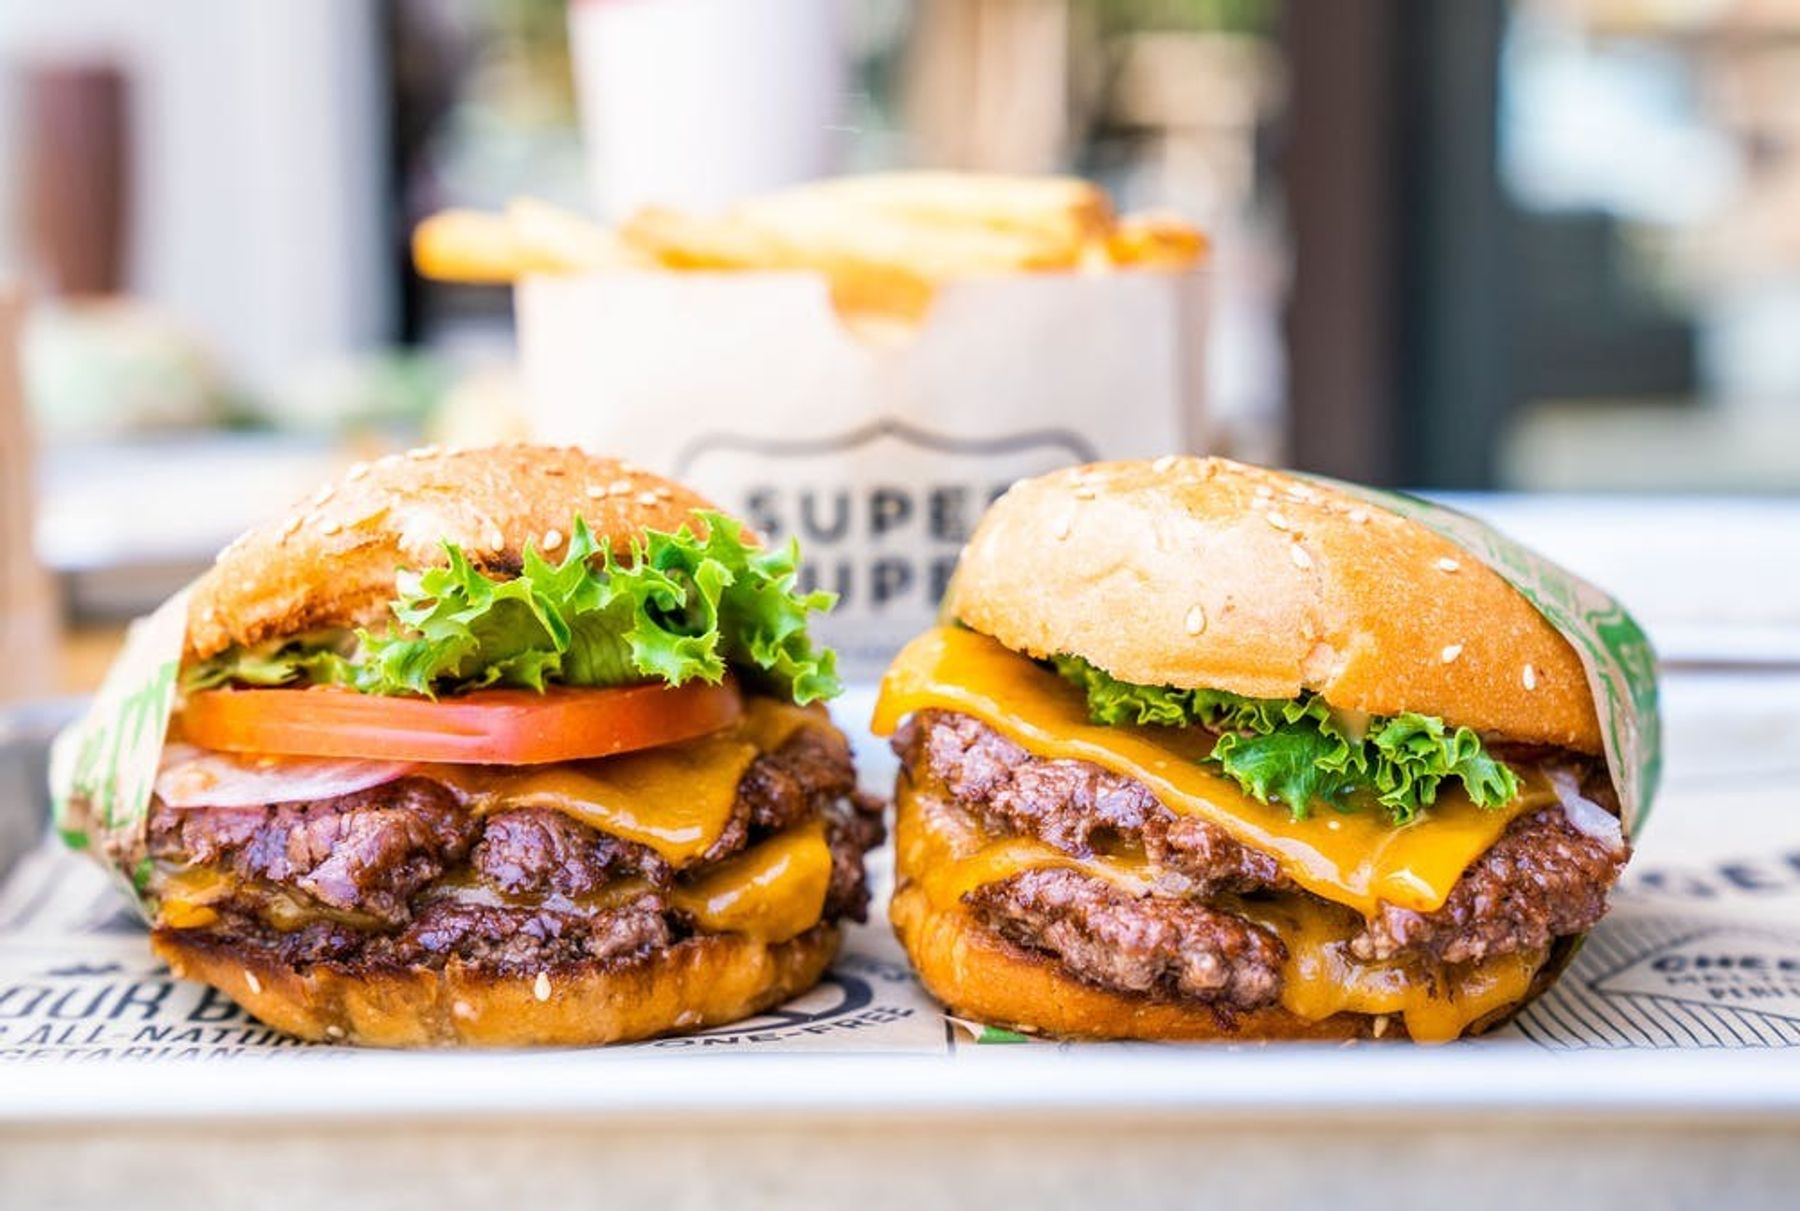 Super Duper Burgers | Downtown San Francisco